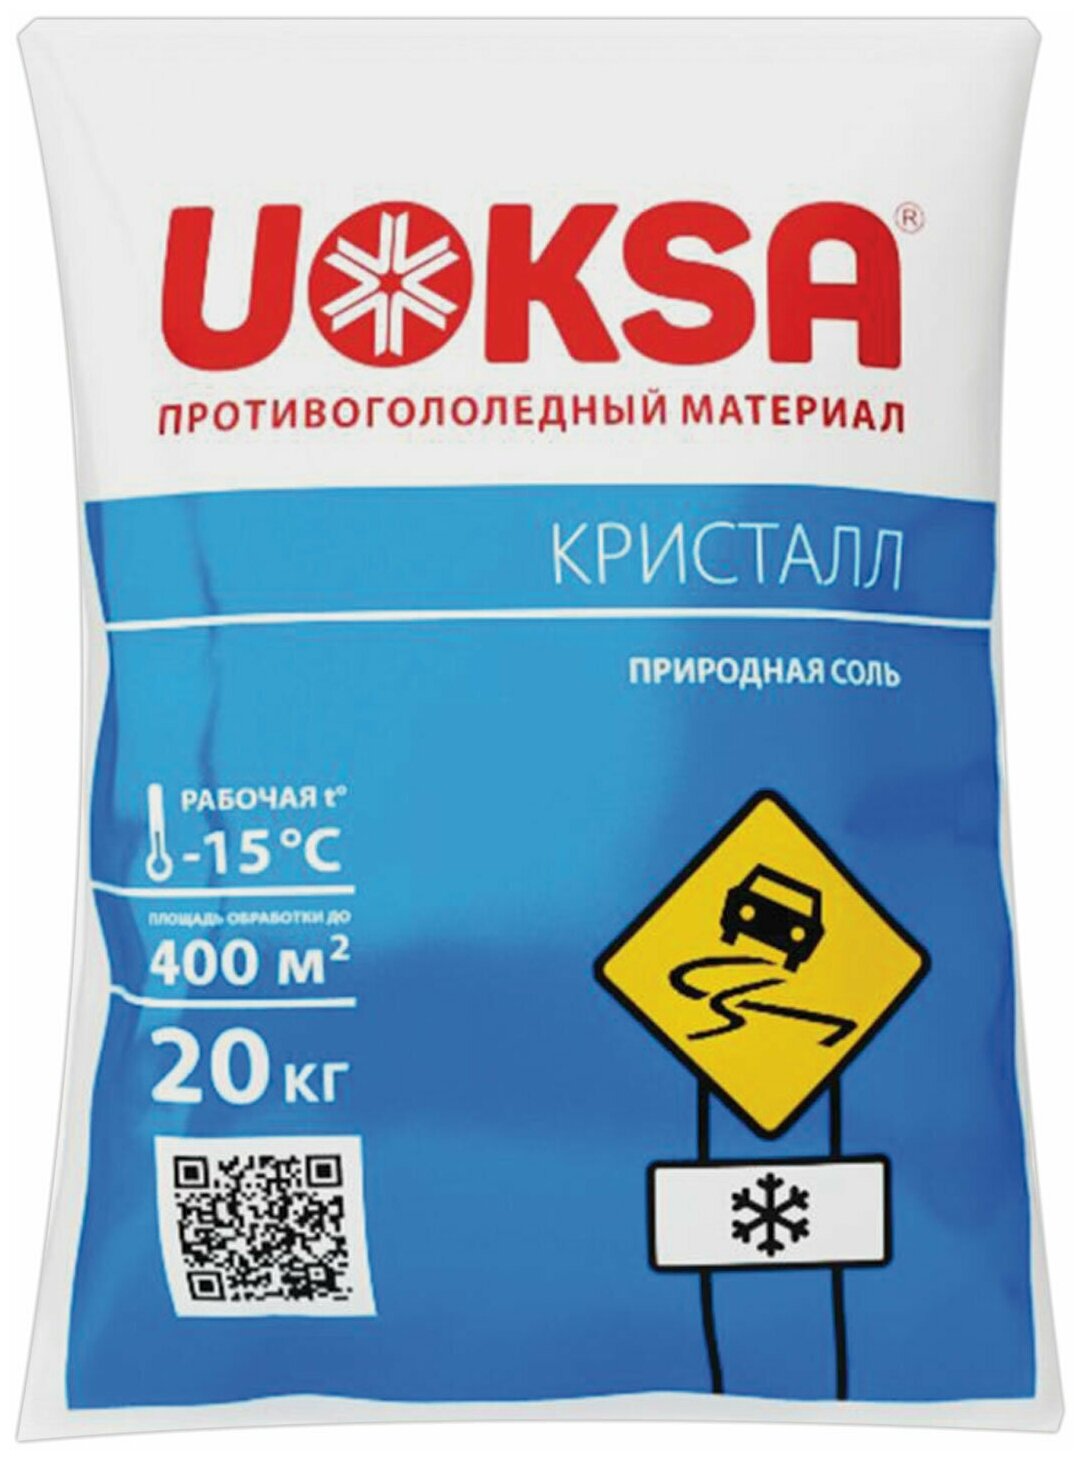 Материал противогололедный UOKSA 20 кг, Кристал, до -15C, природная соль, мешок